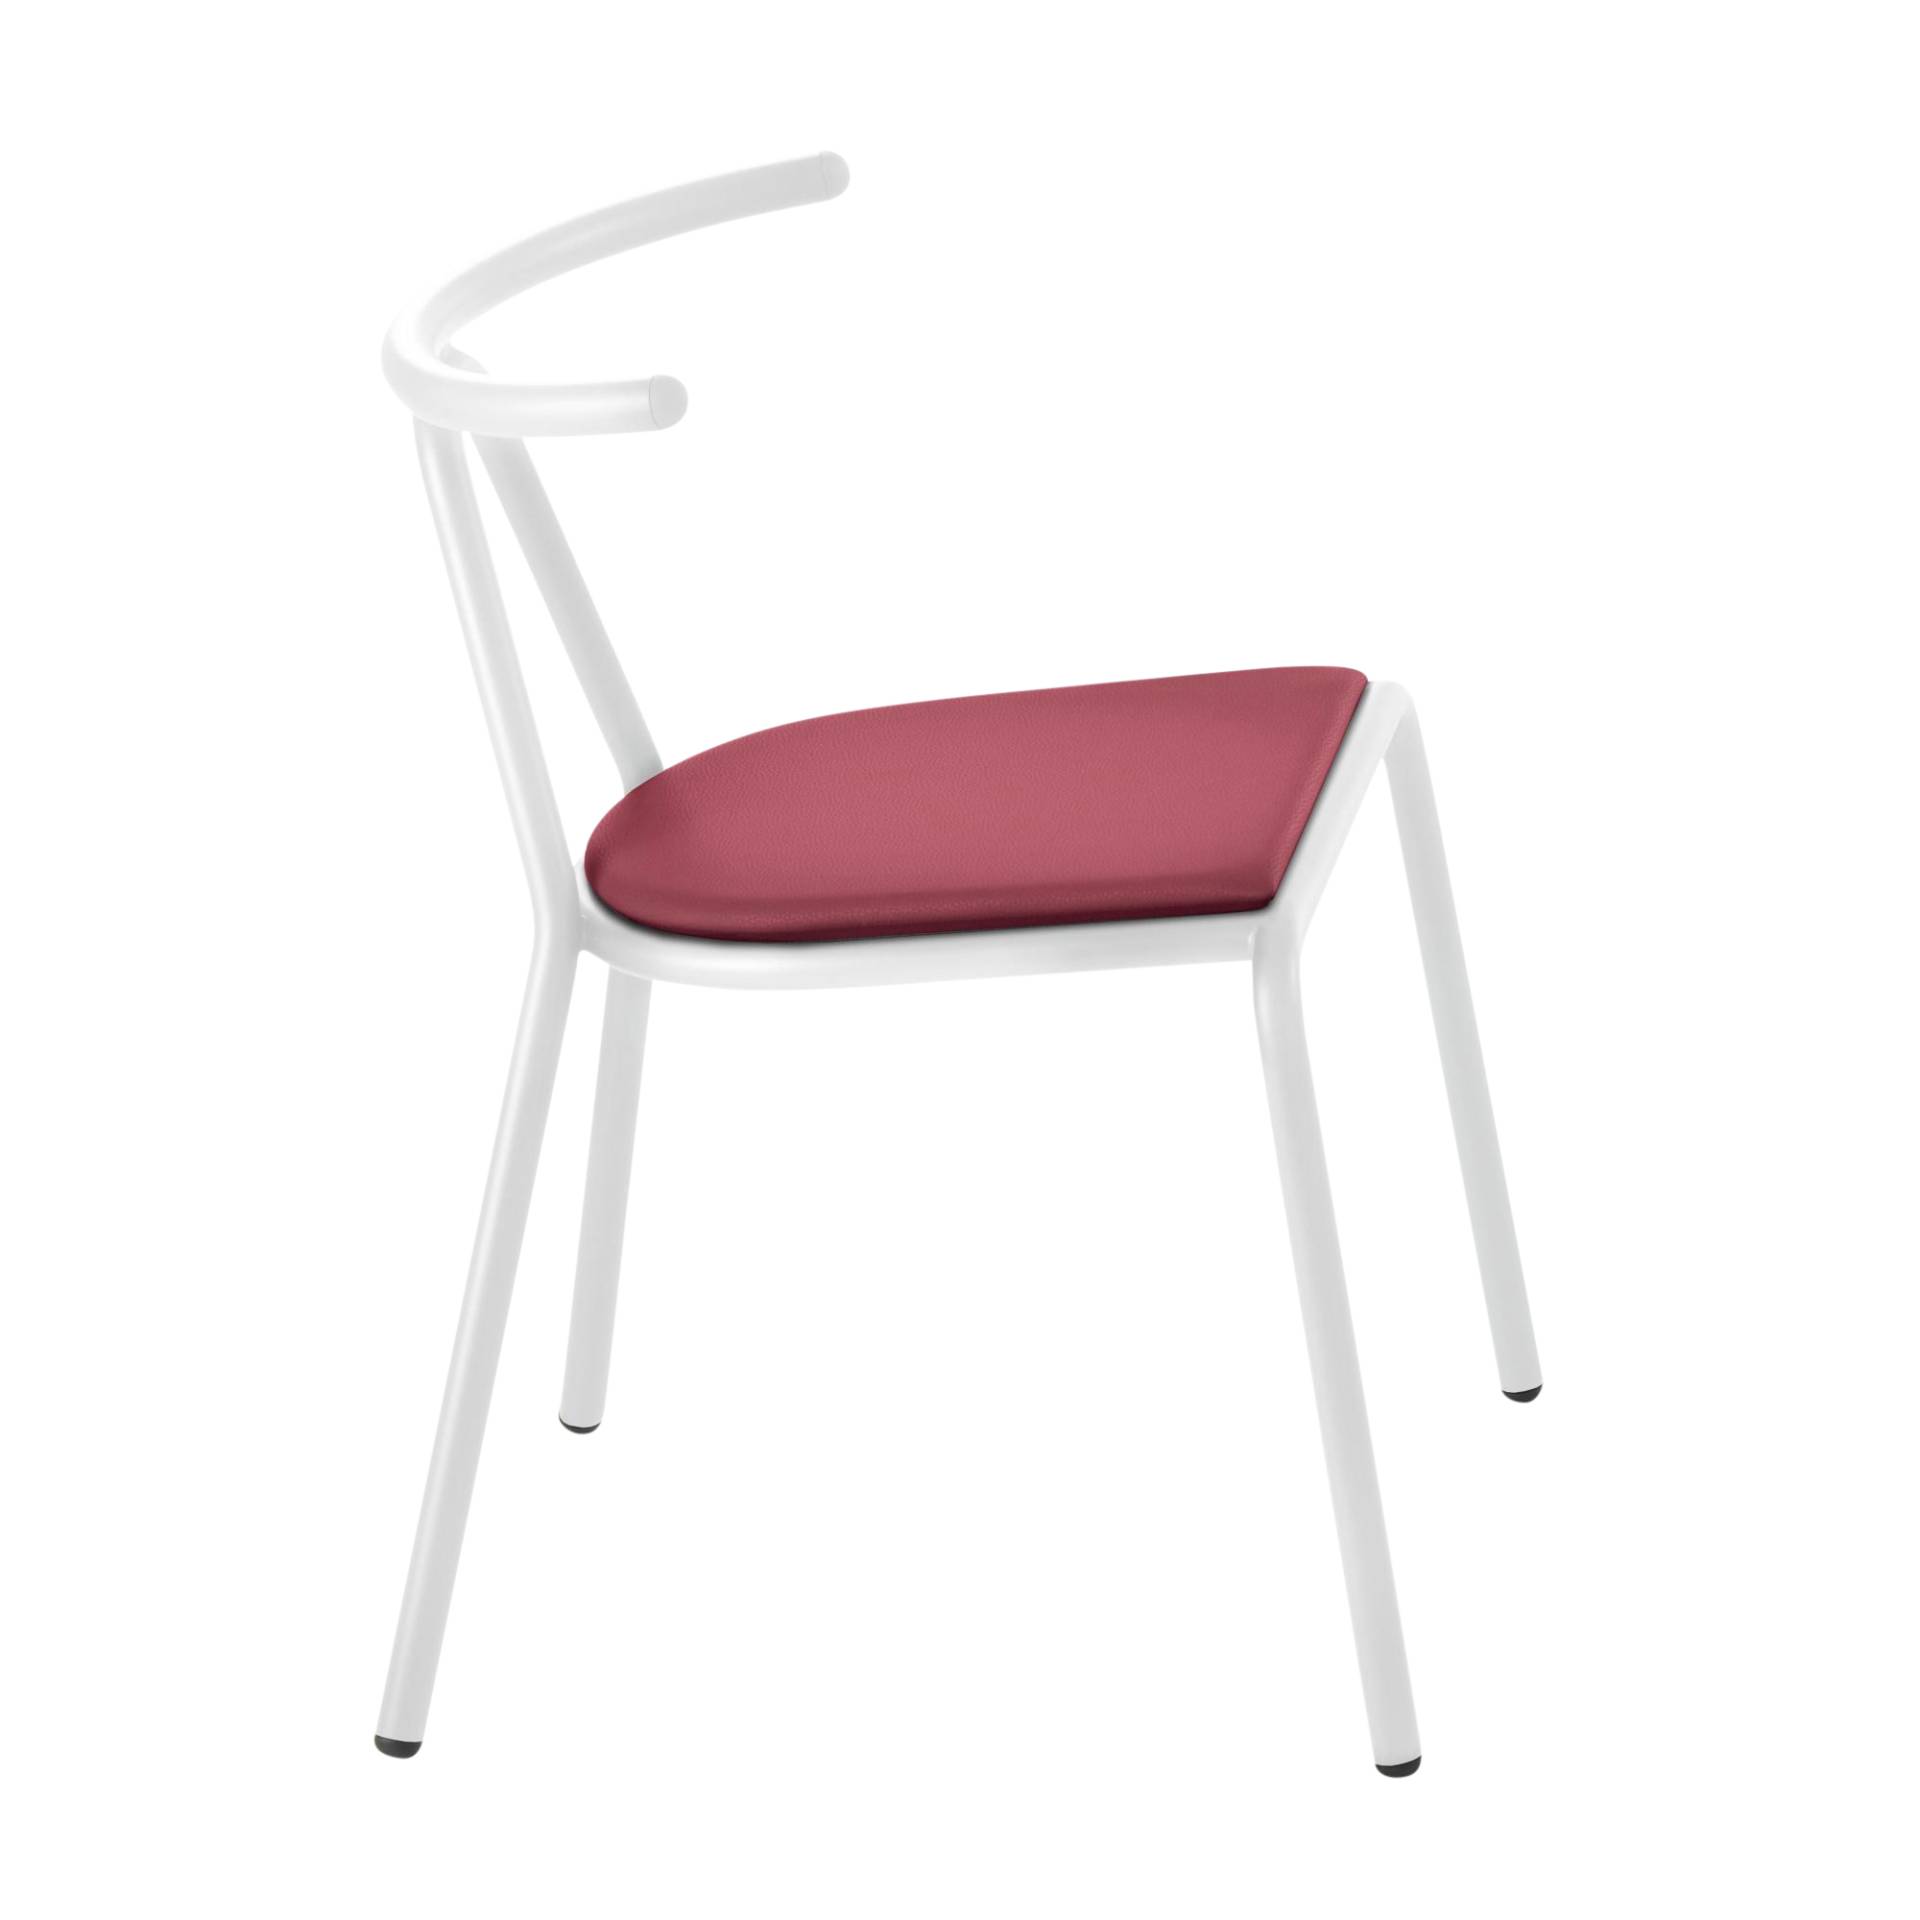 B-Line - Toro Stuhl Sitzfläche Platinum Flukso - rot/Sitzfläche: Platinum Flukso/Gestell weiß/BxHxT 55x73,5x54cm von B-Line